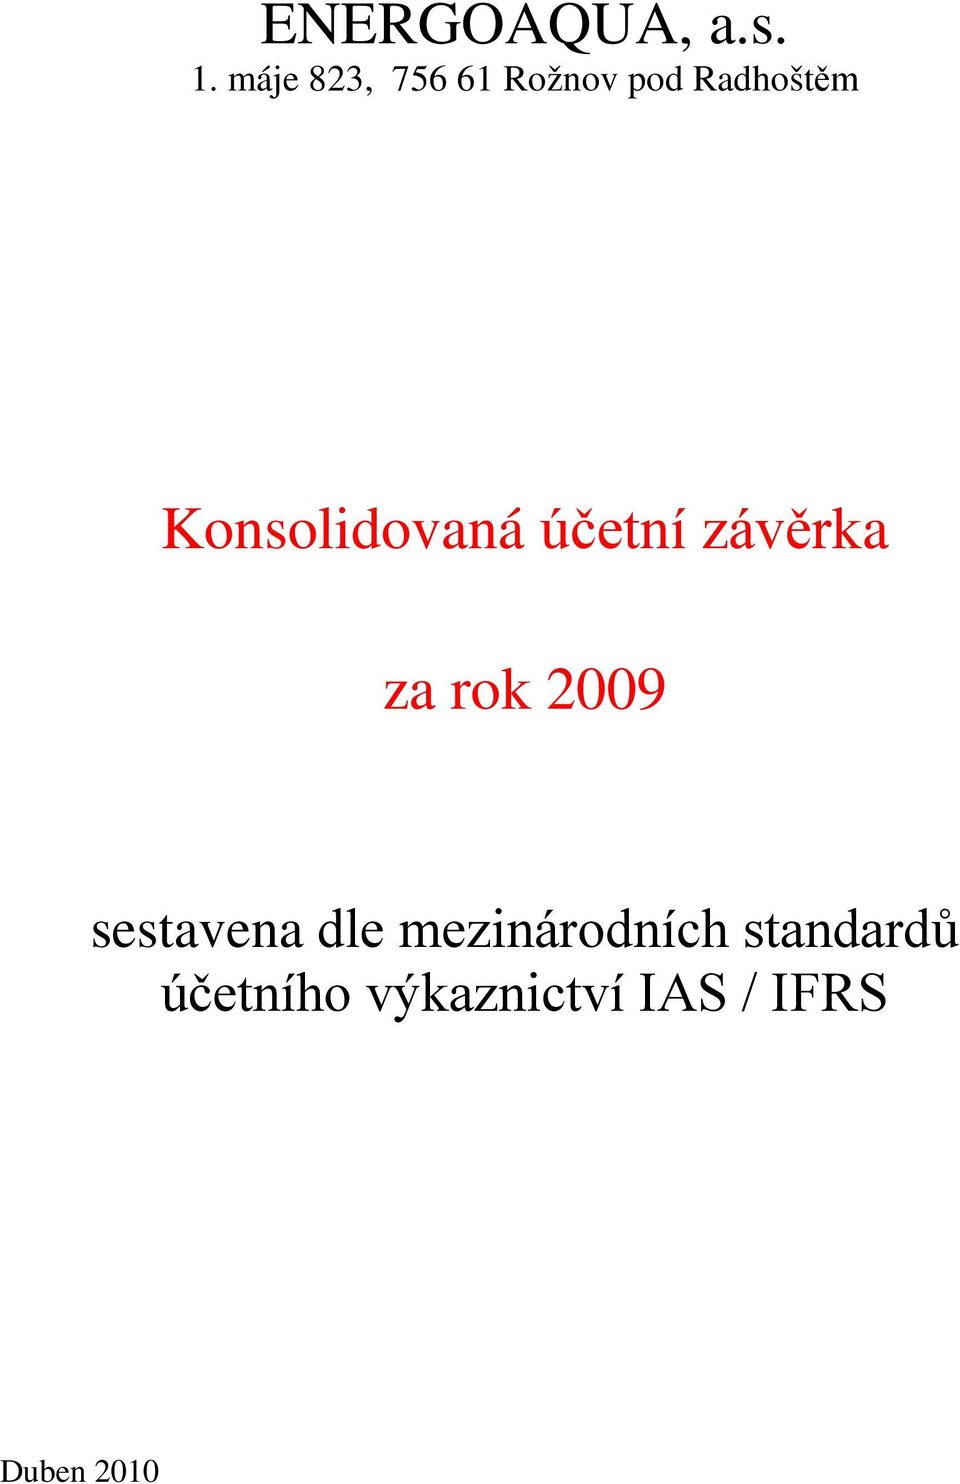 Konsolidovaná účetní závěrka za rok 2009